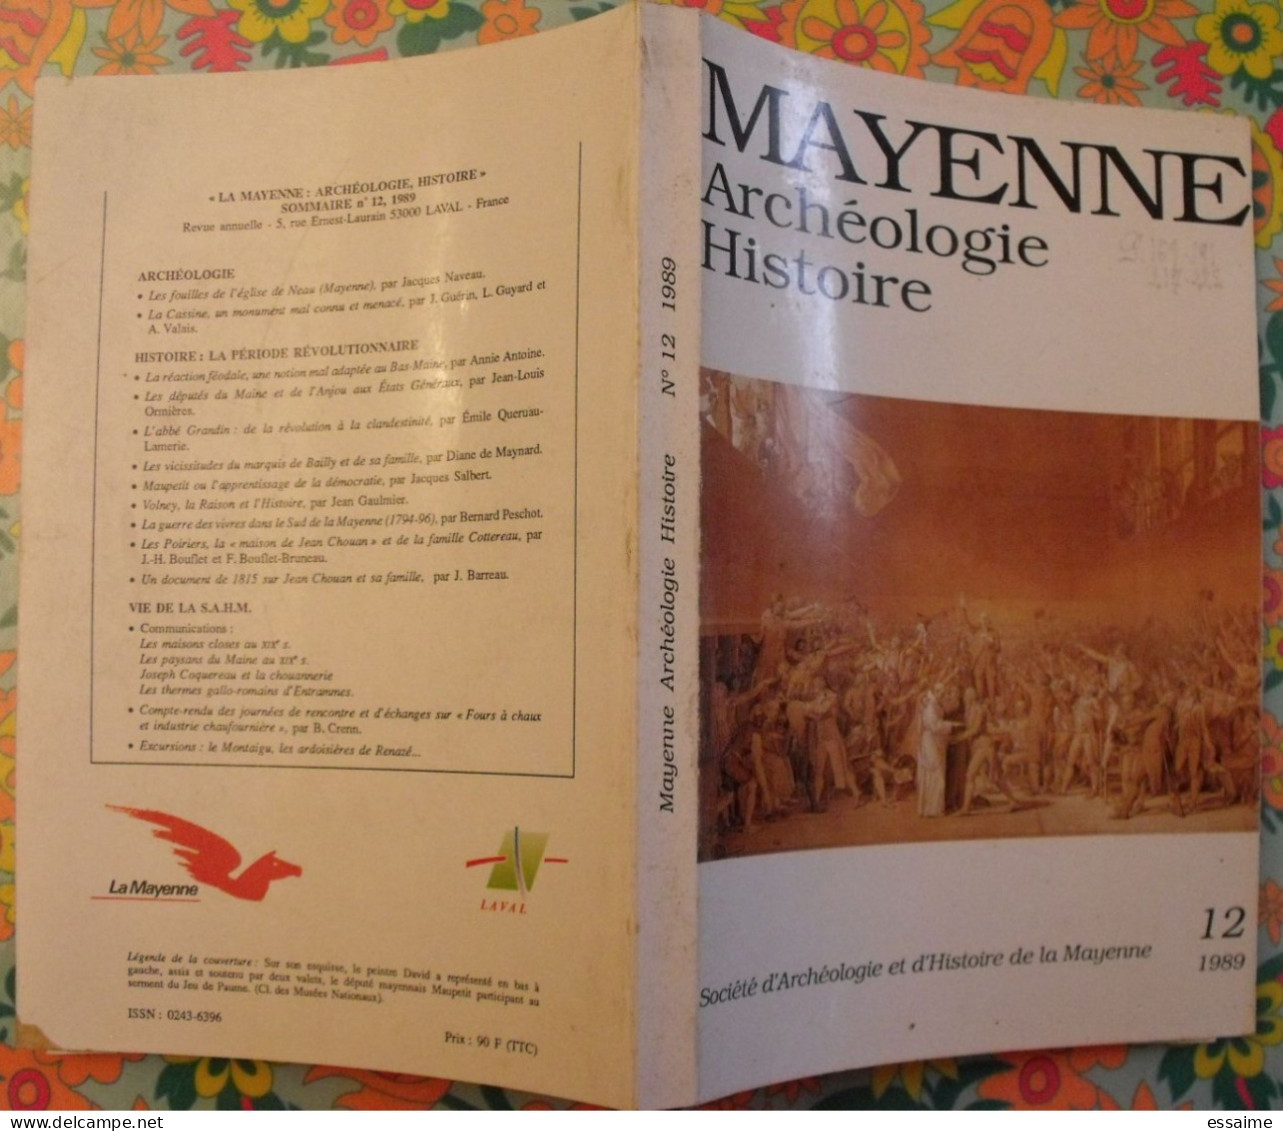 lot de 6 numéros de la revue "La Mayenne archéologie histoire" 1985-1991. pritz bais chateau-gontier jublains laval